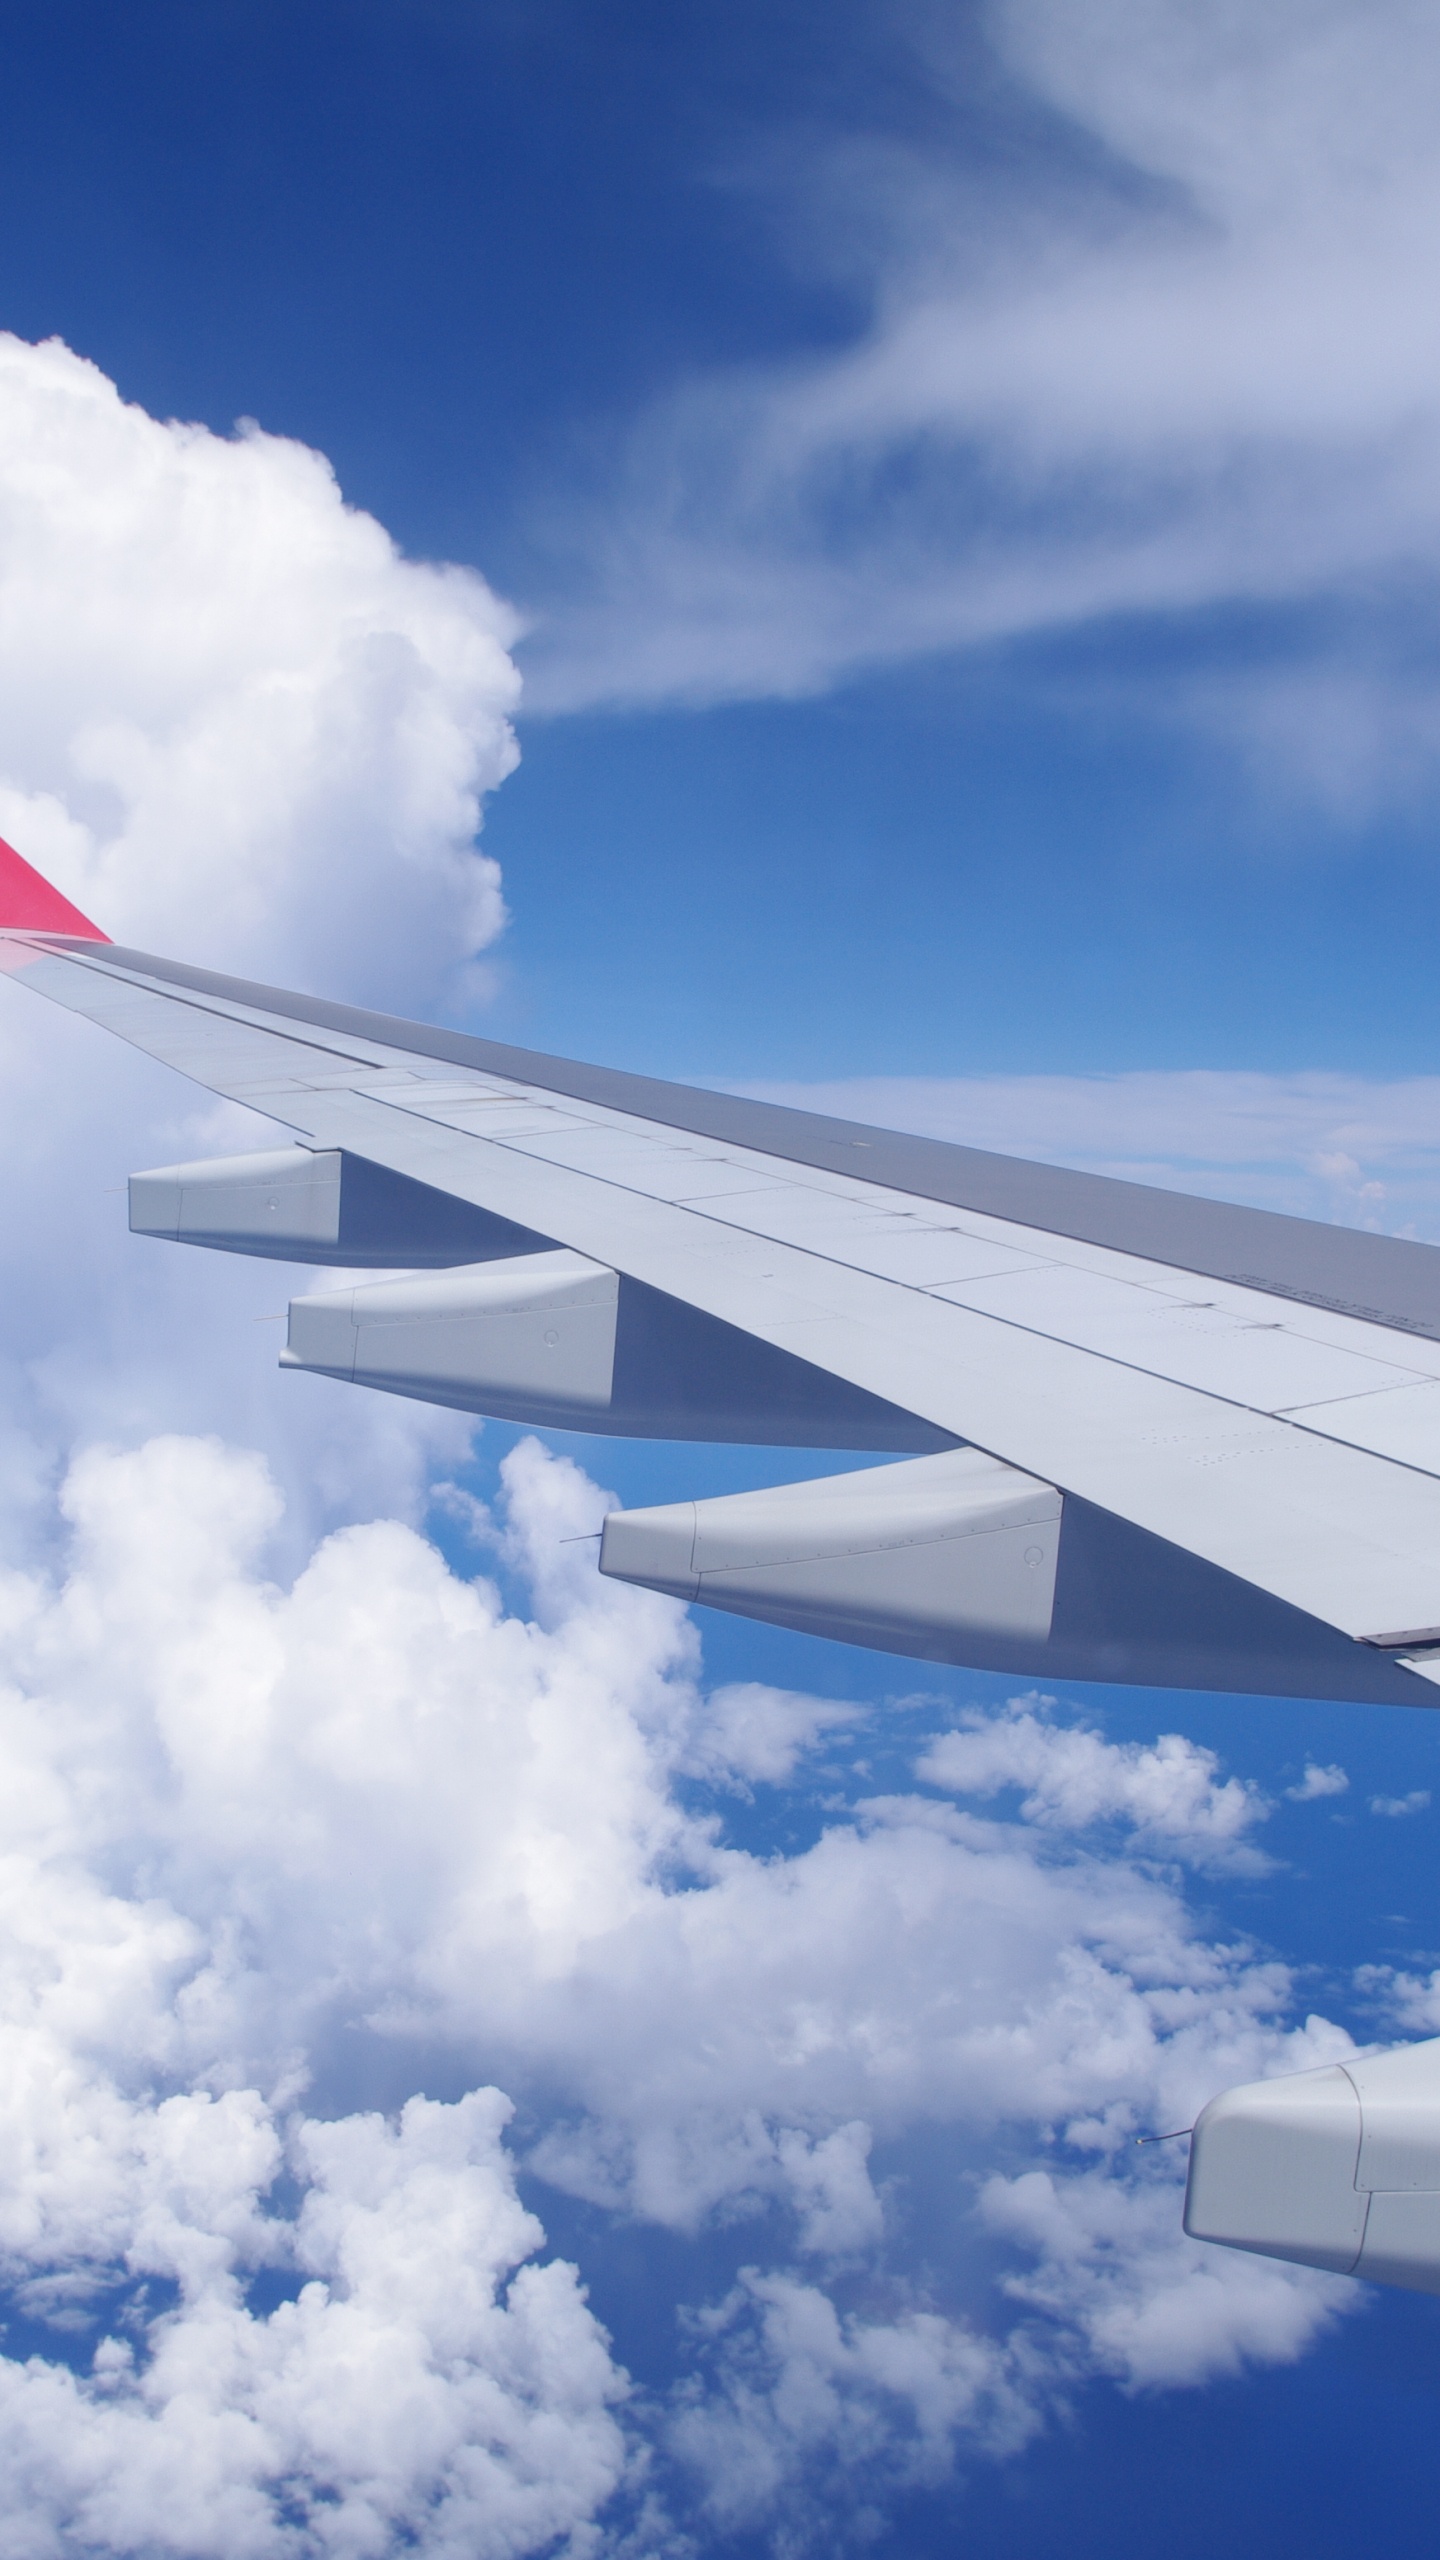 Ala de Avión Blanco y Rojo Bajo un Cielo Azul y Nubes Blancas Durante el Día. Wallpaper in 1440x2560 Resolution